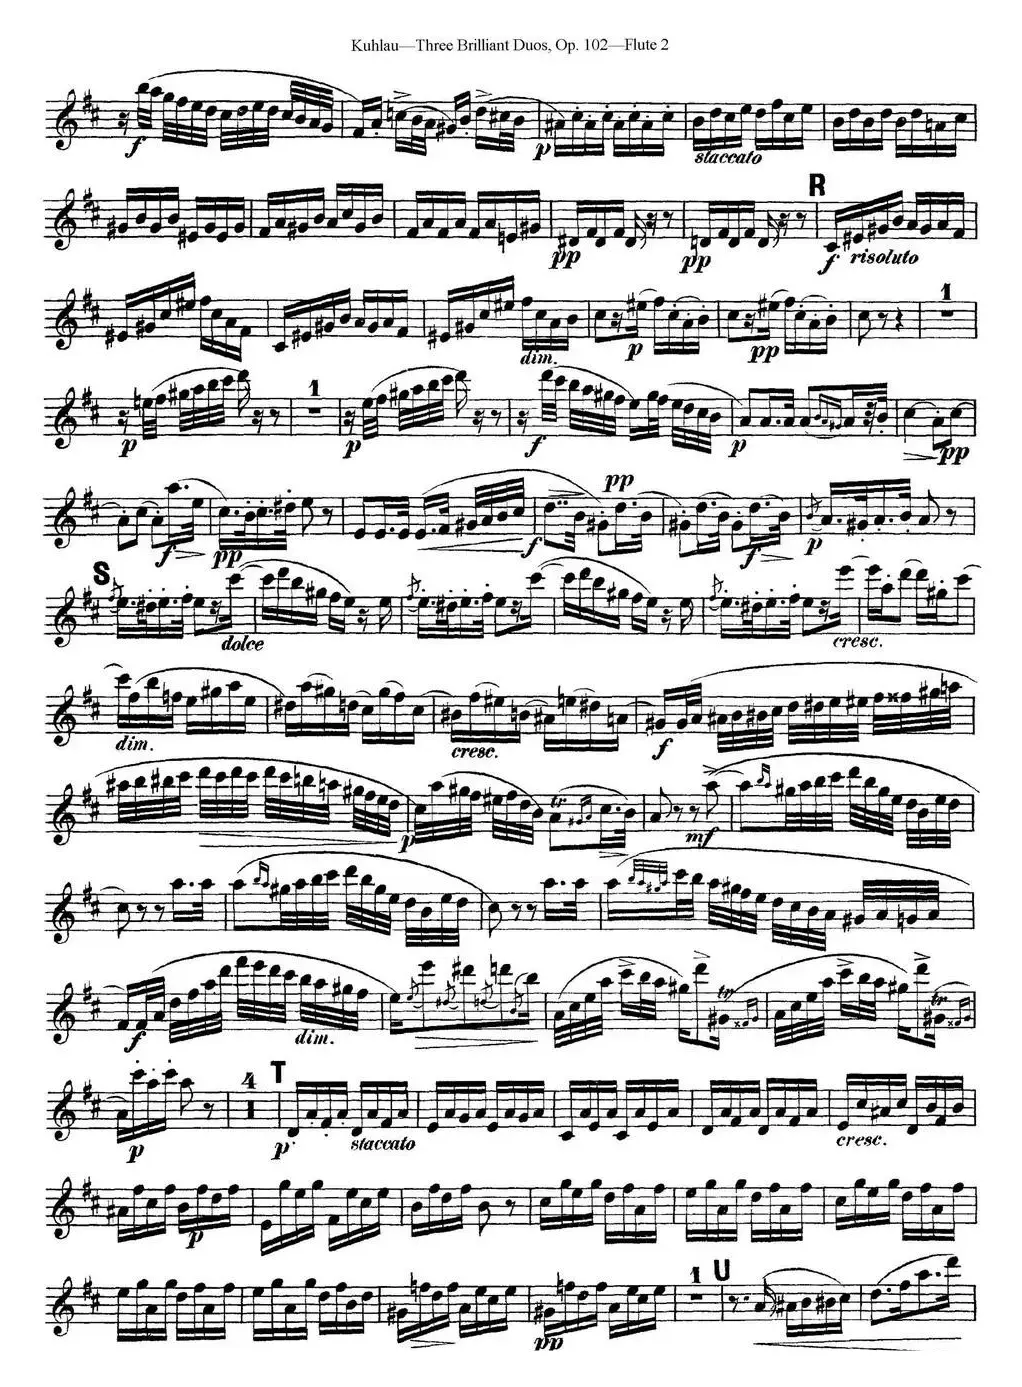 库劳长笛二重奏练习三段OP.102——Flute 2（NO.1）